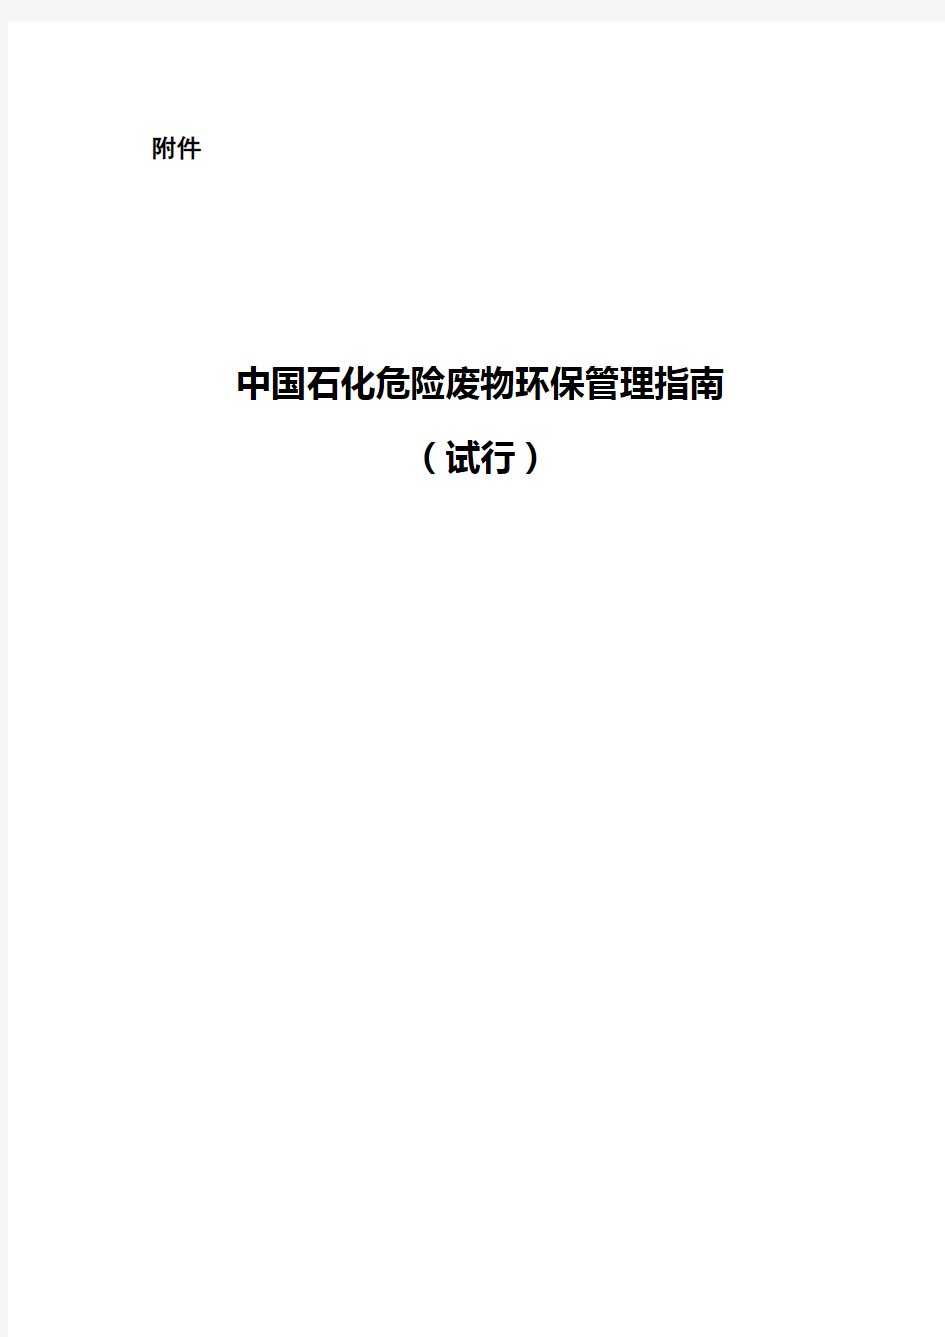 2 附件：中国石化危险废物环保管理指南(试行)